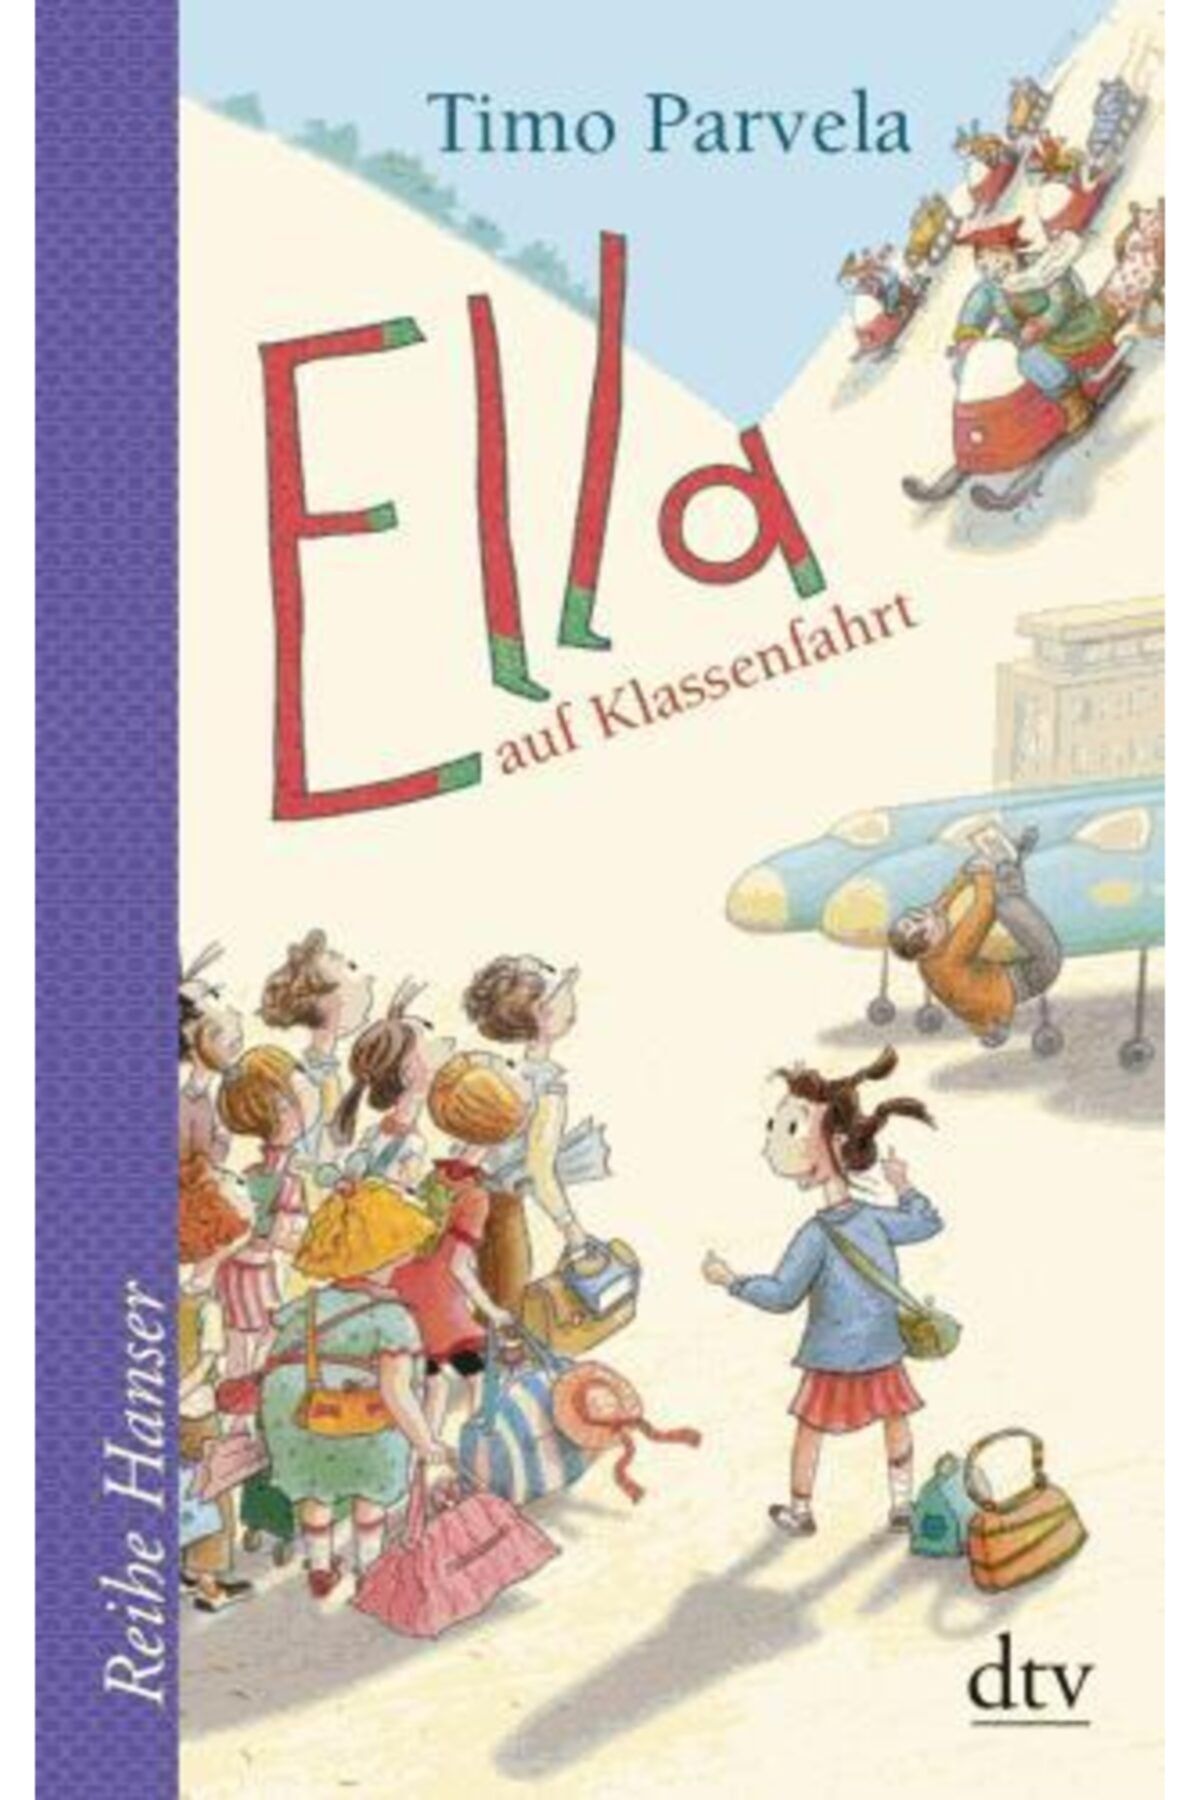 Arkadaş Yayıncılık Ella Auf Klassenfahrt